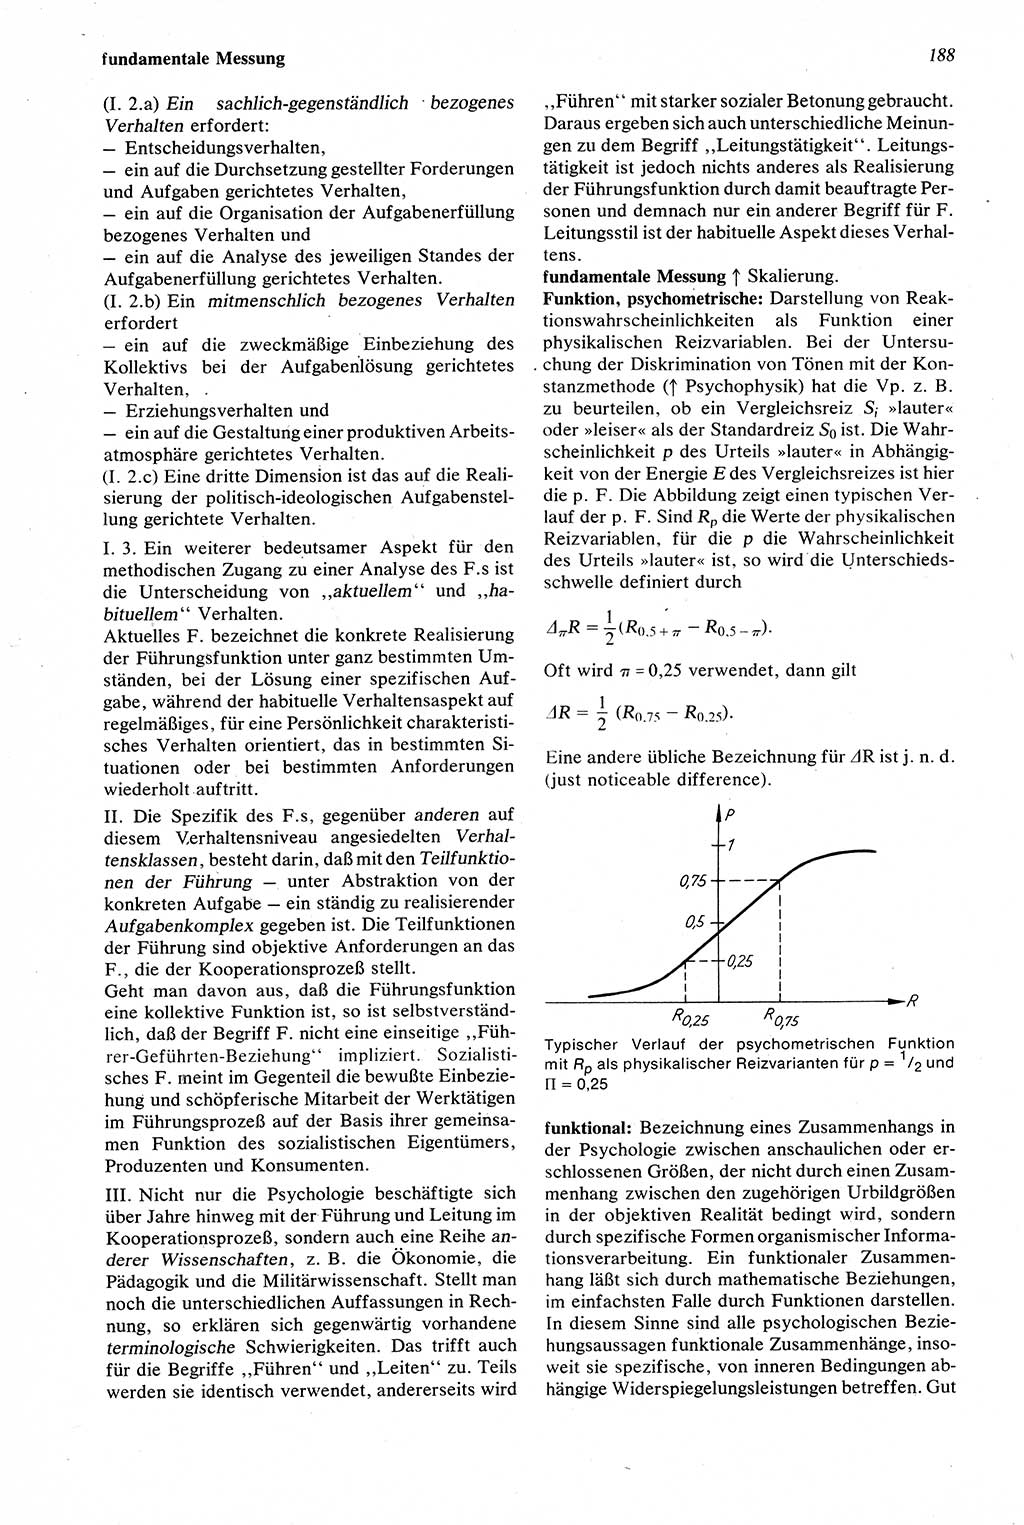 Wörterbuch der Psychologie [Deutsche Demokratische Republik (DDR)] 1976, Seite 188 (Wb. Psych. DDR 1976, S. 188)